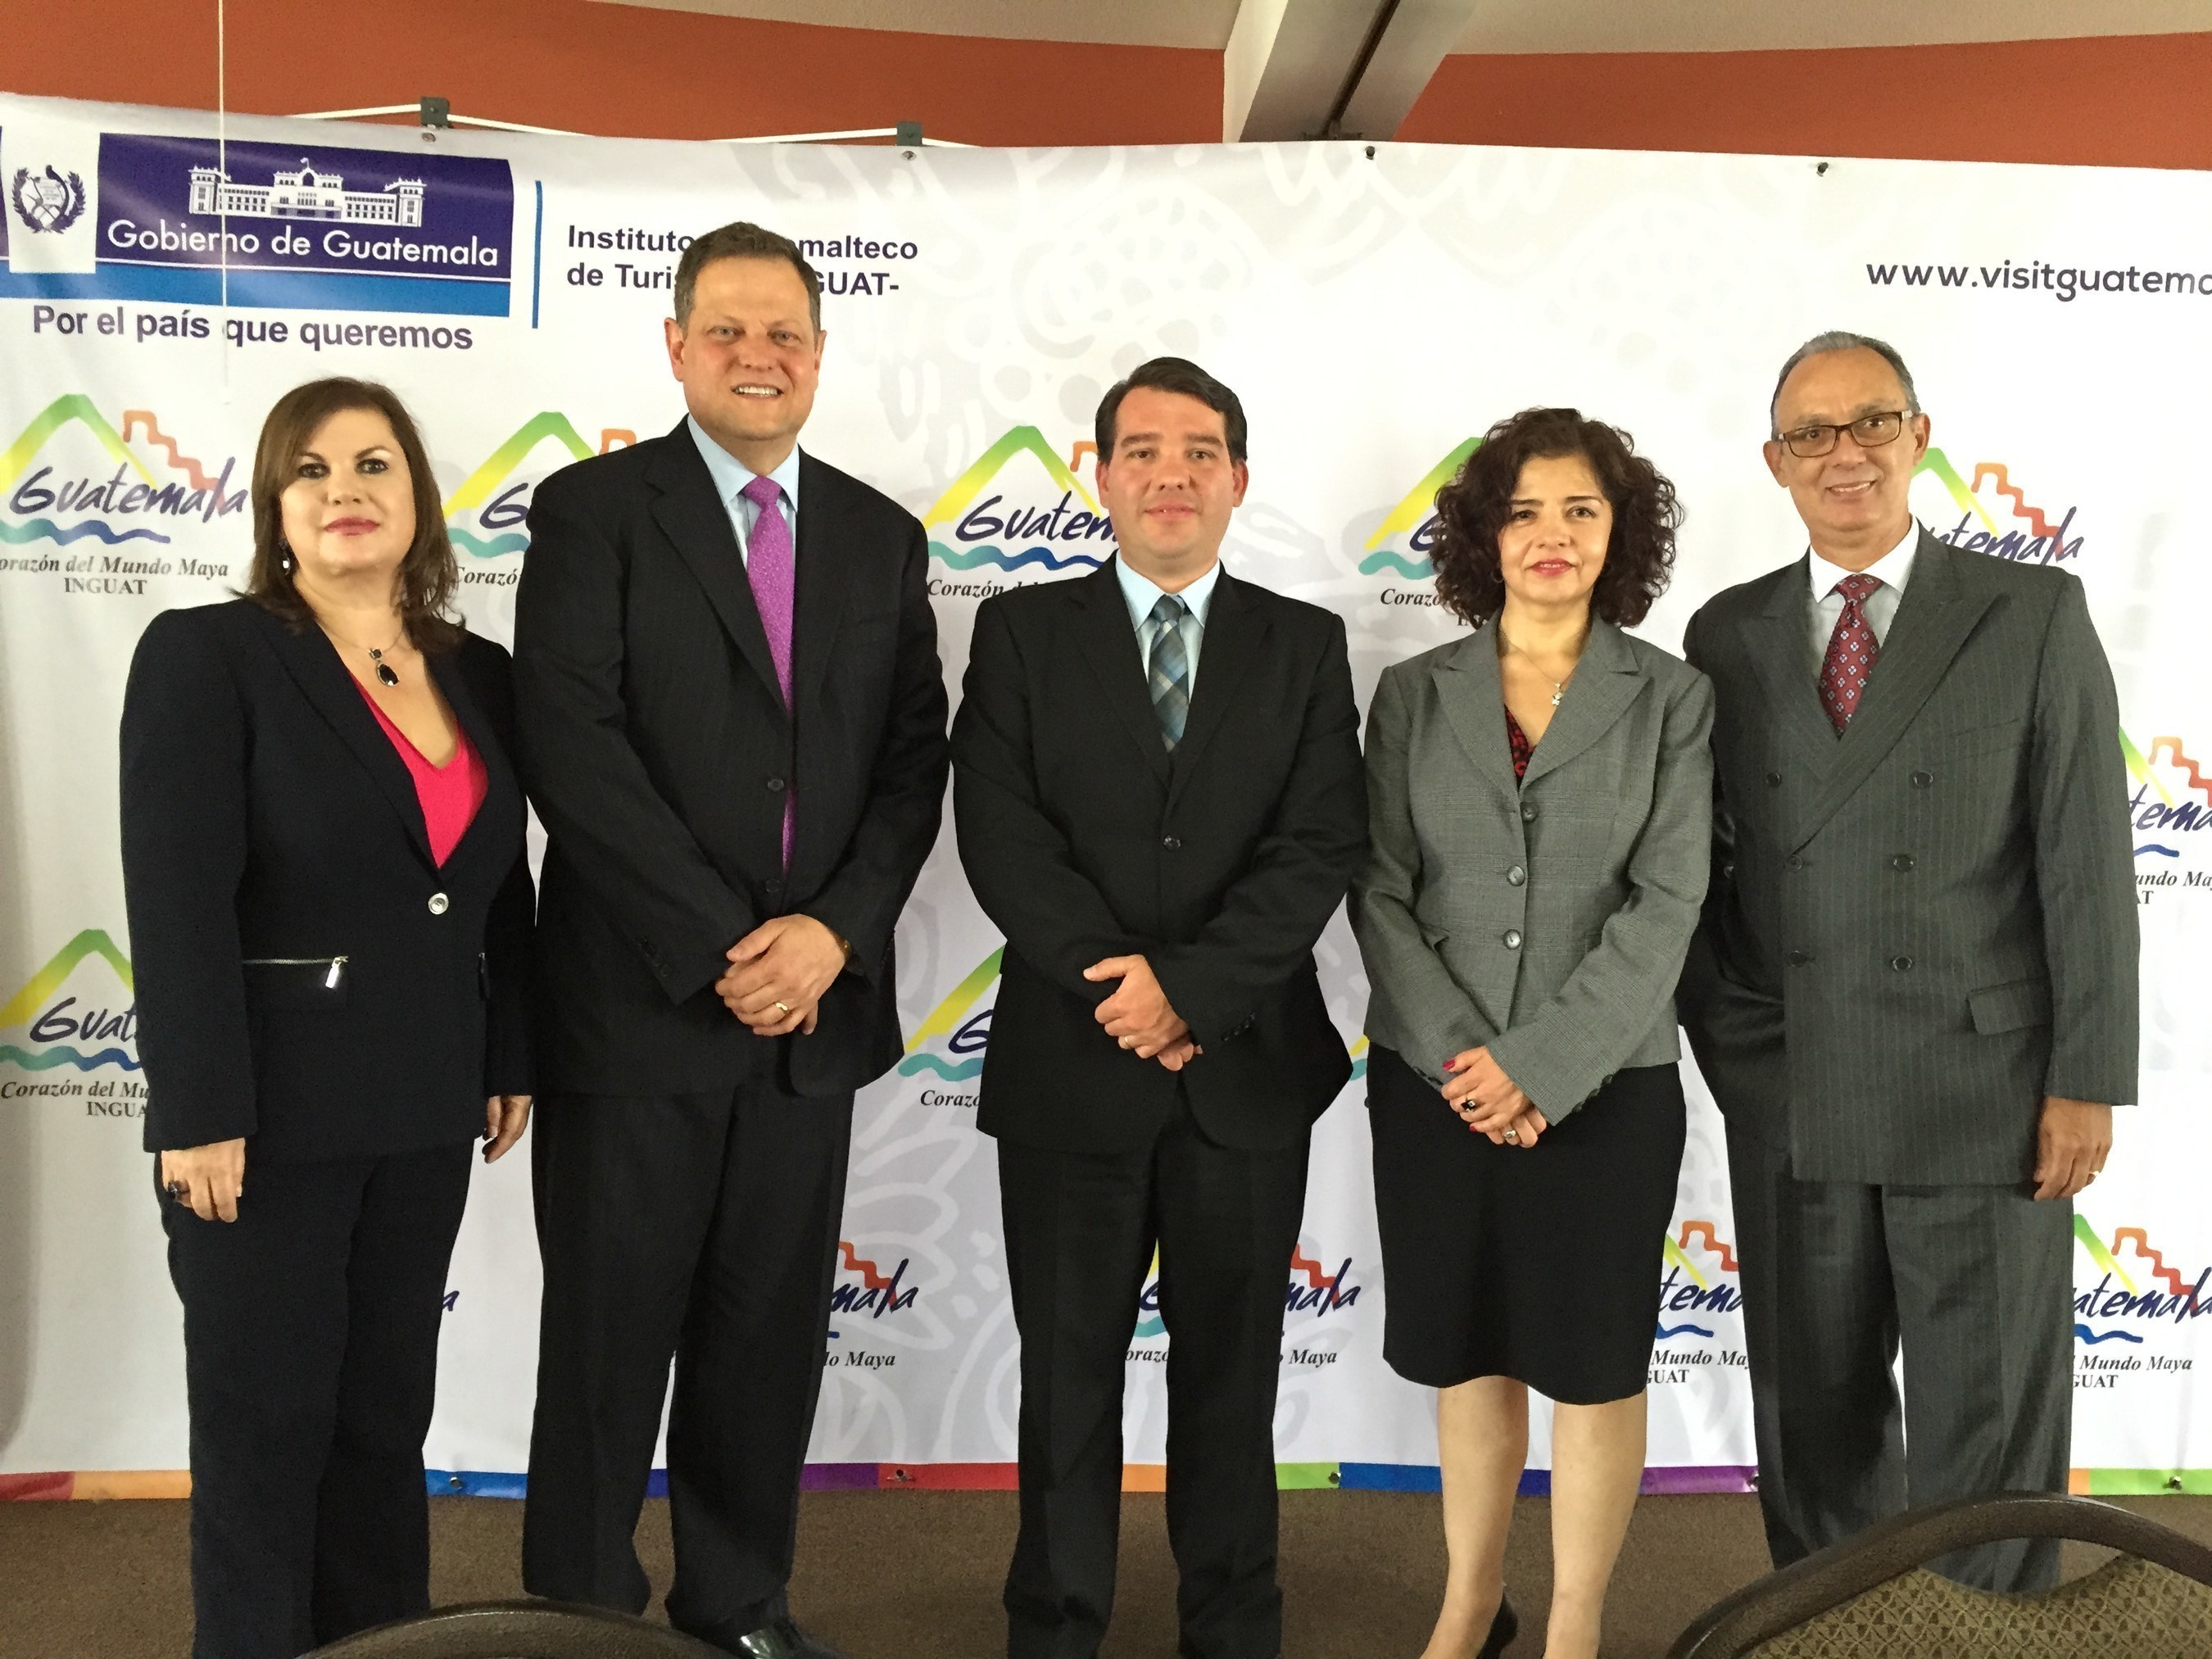 Volaris announces new routes to Guatemala